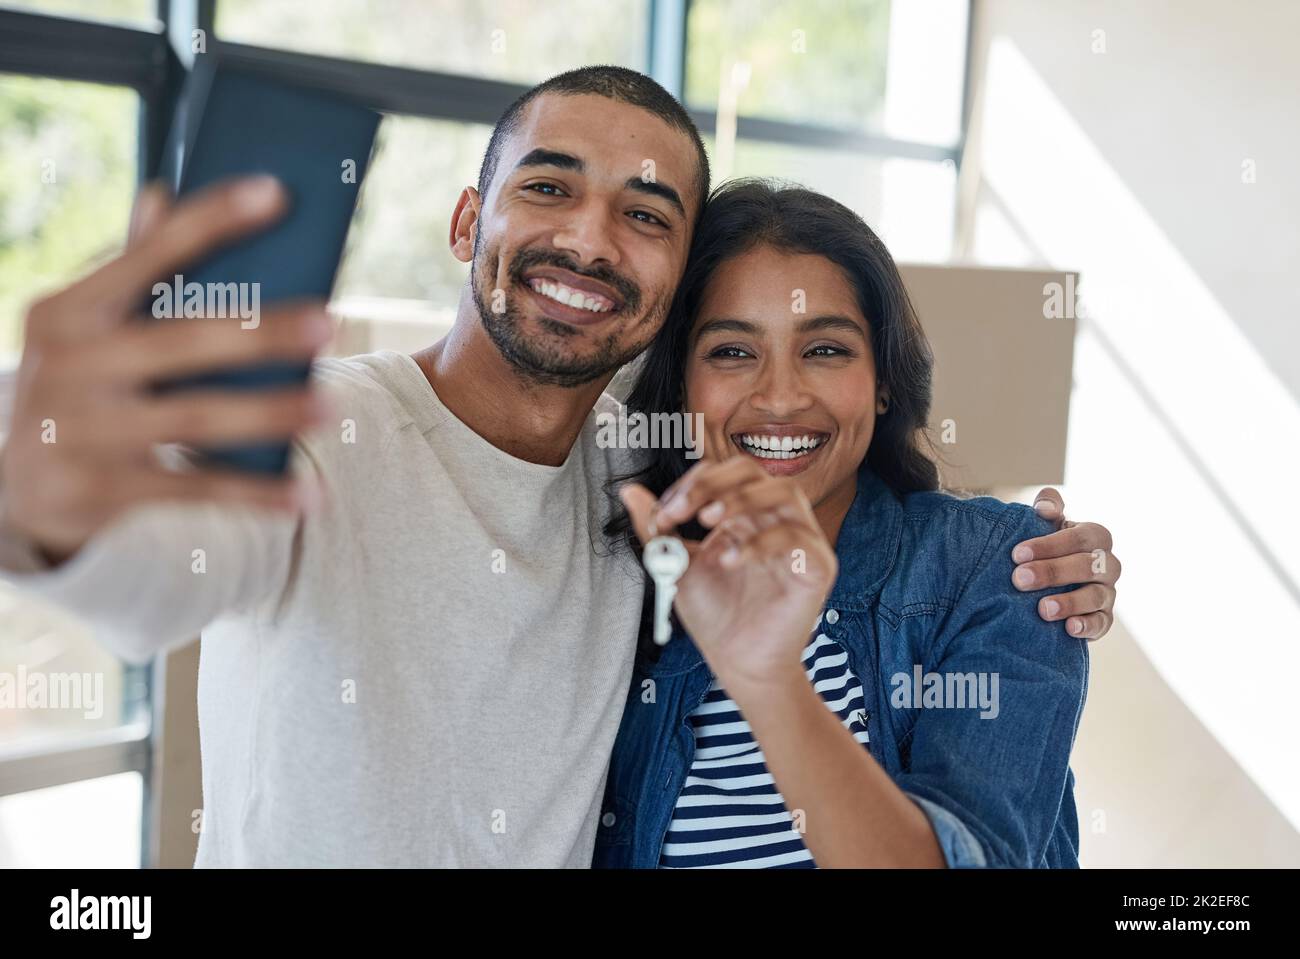 Questo è un momento che vale la pena catturare. Scatto di una giovane coppia felice prendendo un selfie mentre si spostano nella loro nuova casa insieme. Foto Stock